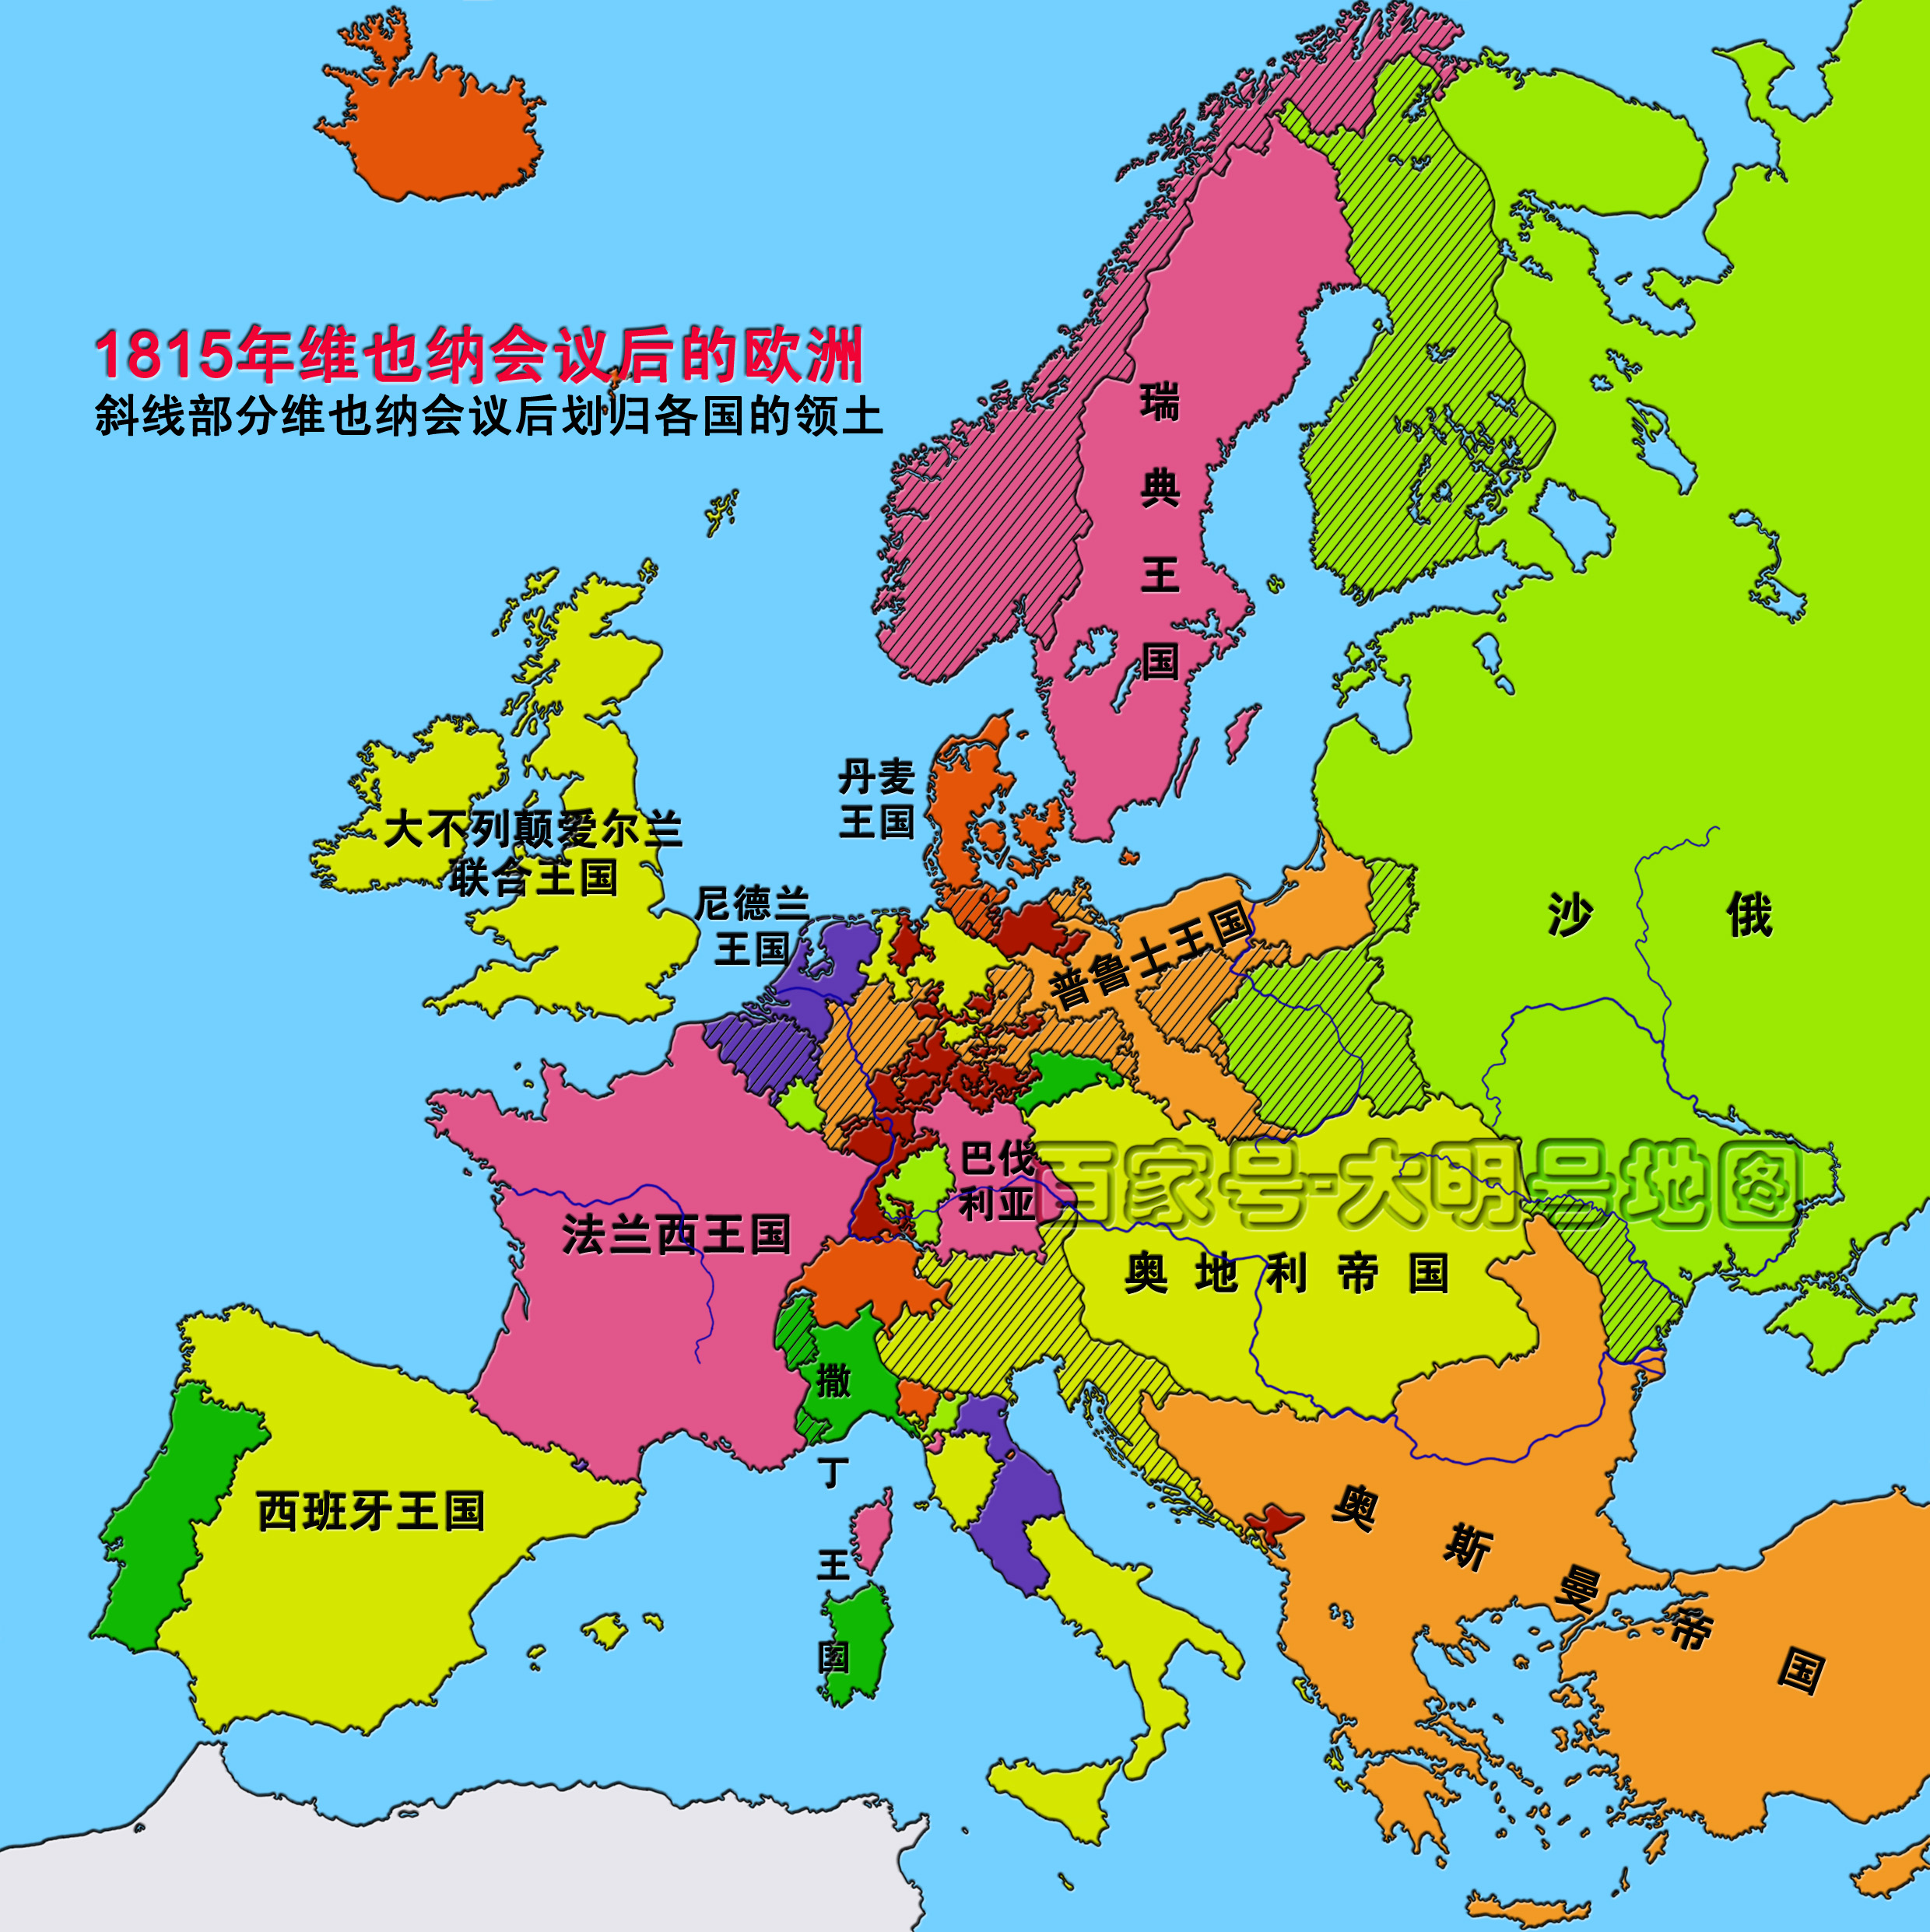 荷兰和比利时原本是一个国家,为何在1830年的时候分开了?